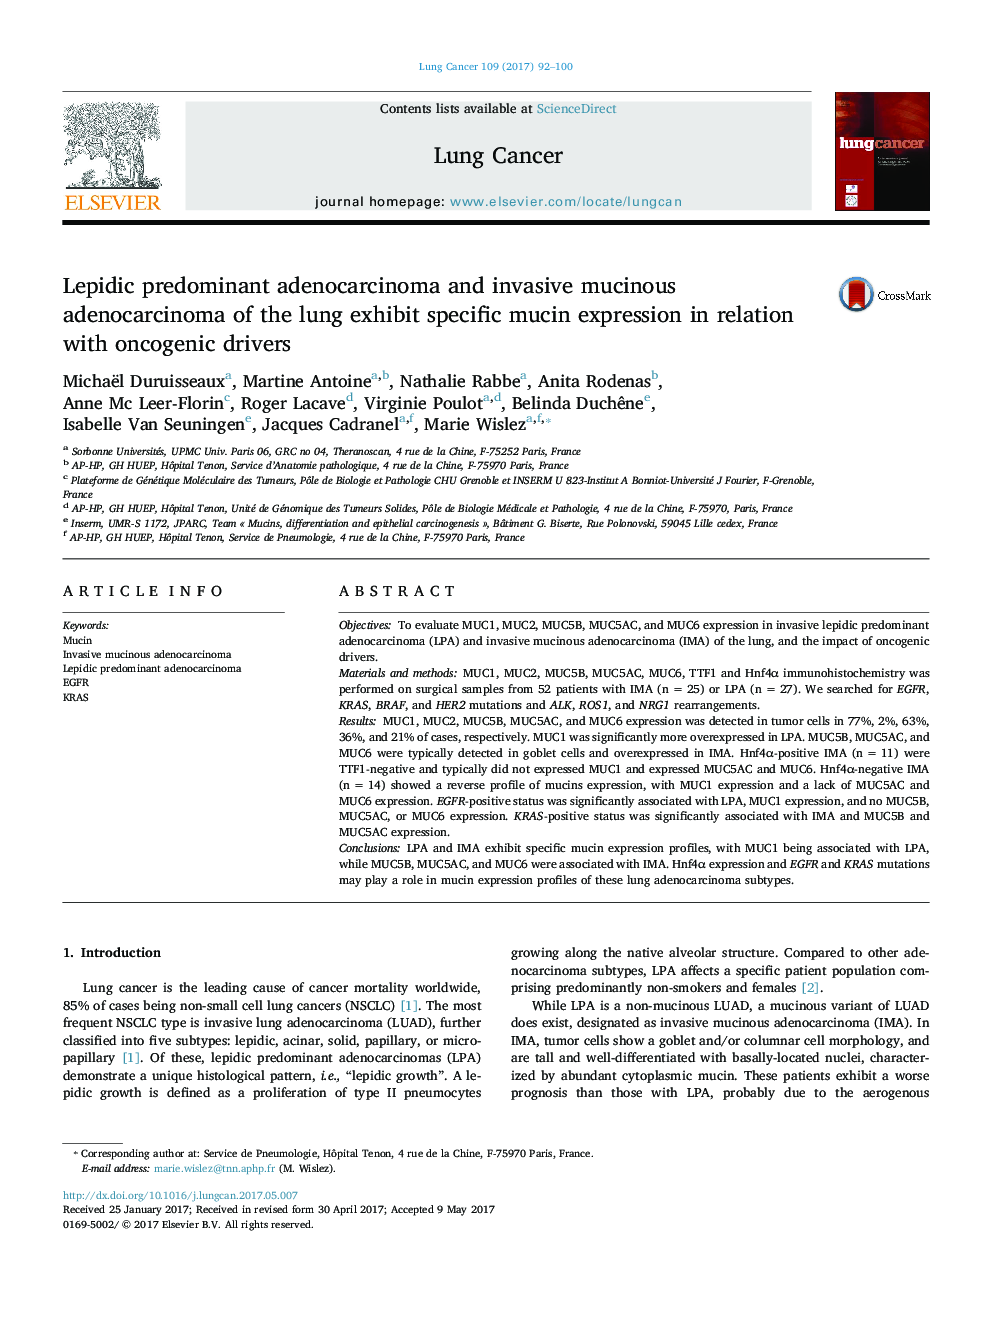 آدنوکارسینوم غالب لپیدی و آدنوکارسینومای مزانشیمی موش سوری در ارتباط با رانندگان آنکوژن 